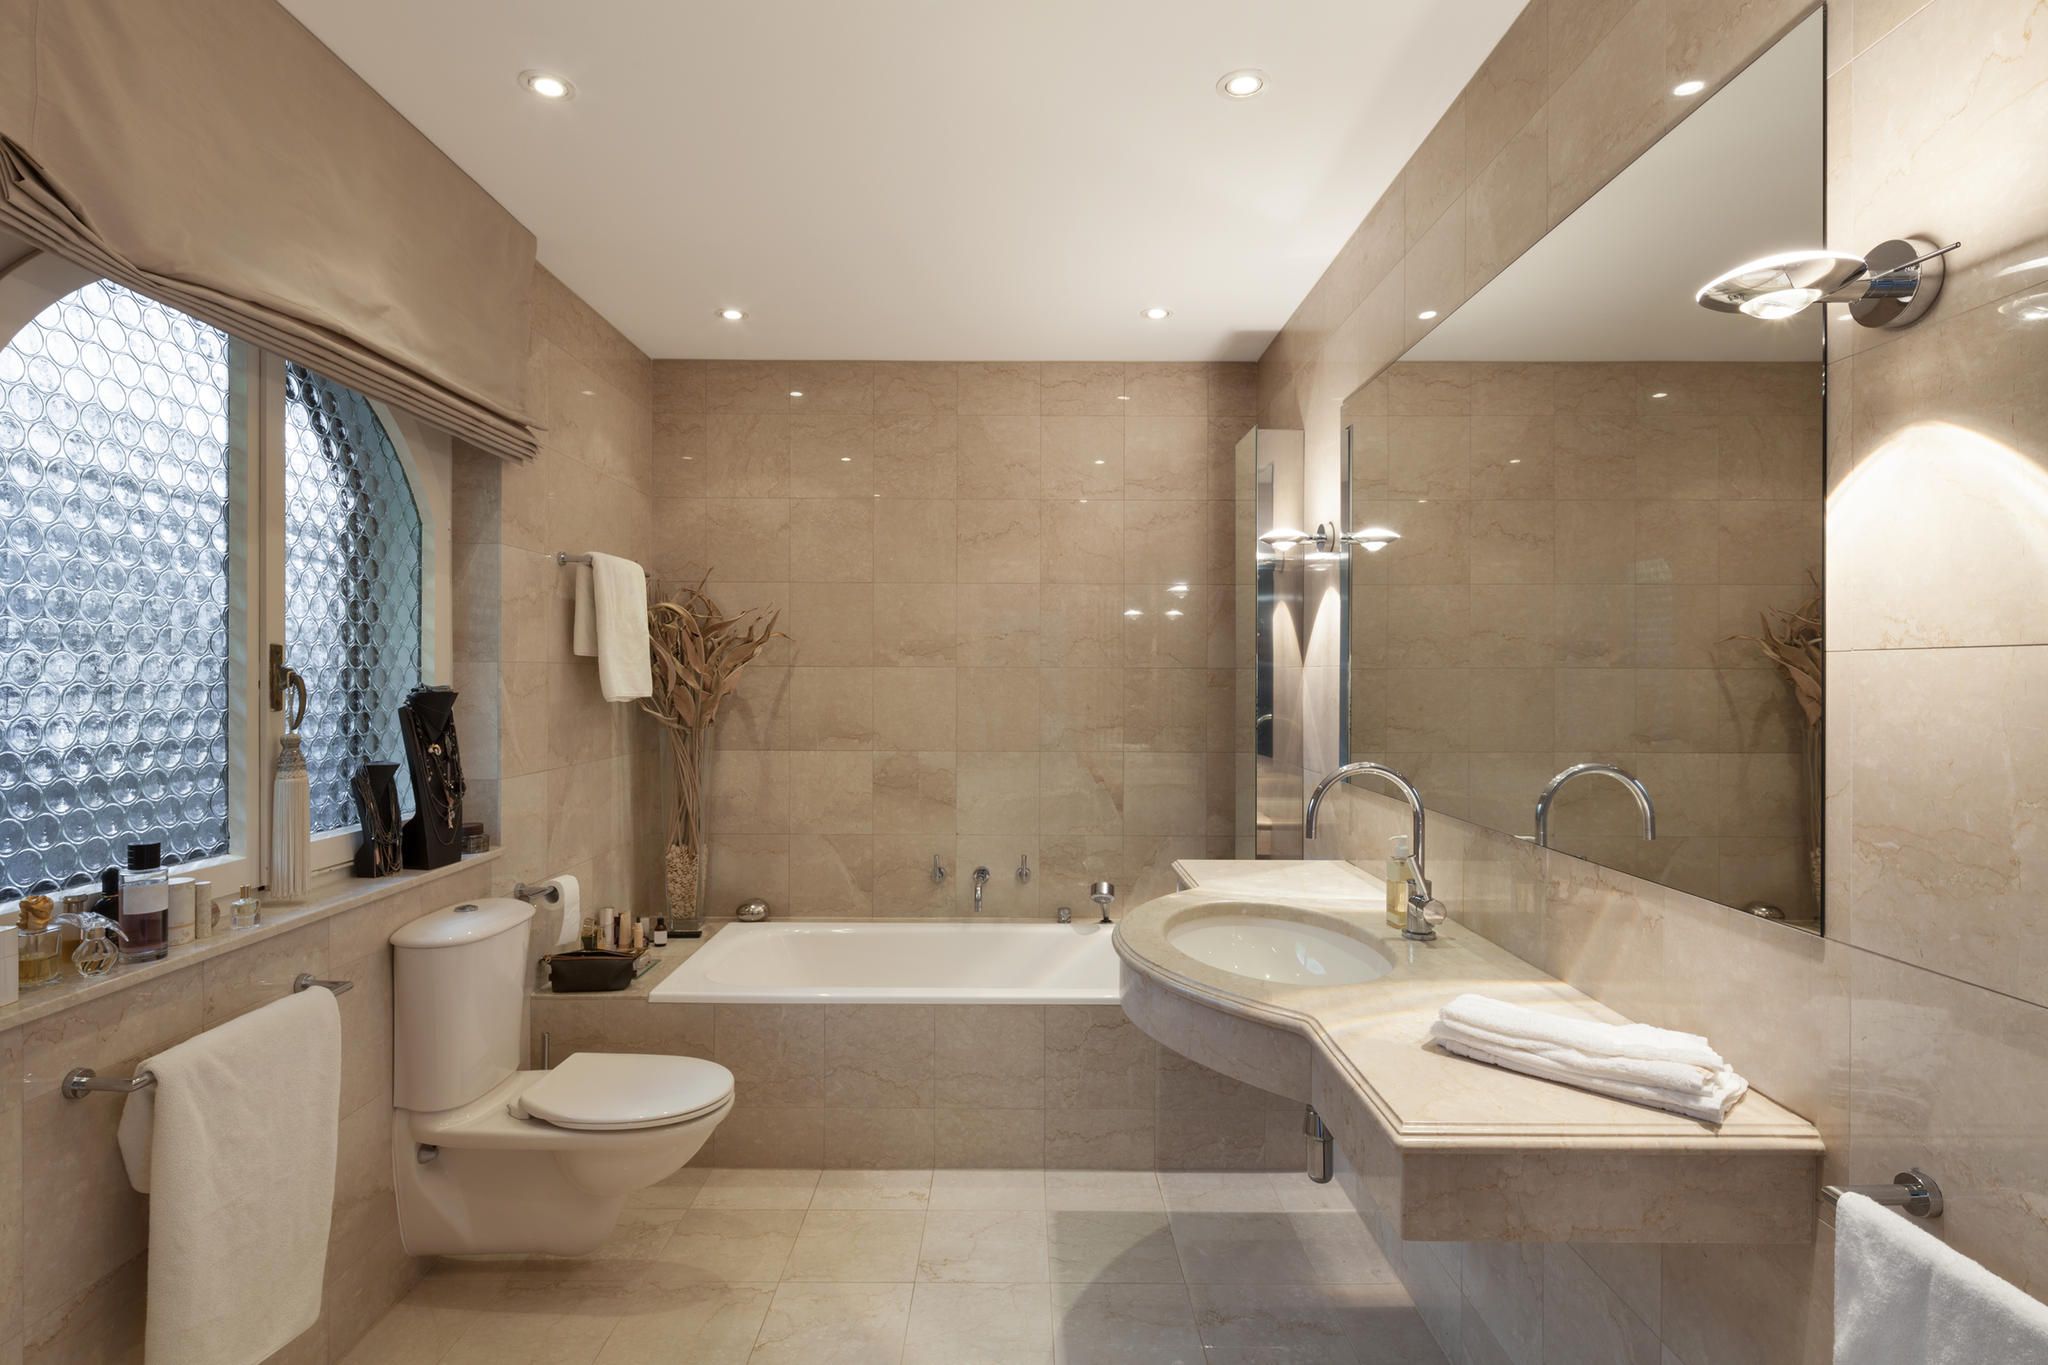 so sieht dein badezimmer luxuriöser aus, als es ist | brigitte.de